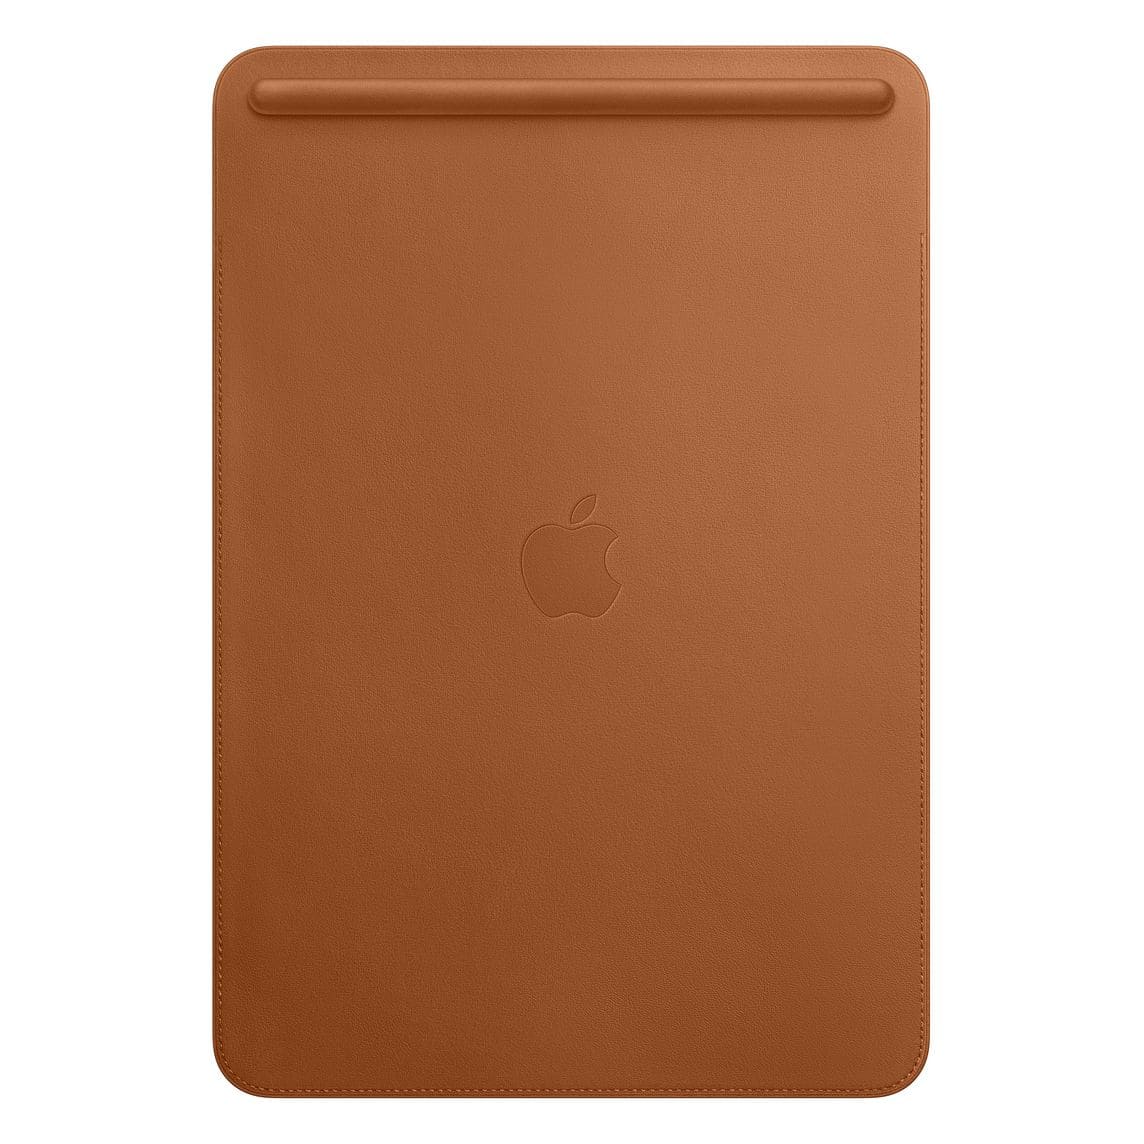 Чехол-футляр Apple Leather Sleeve для iPad Pro 10.5" золотисто-коричневый